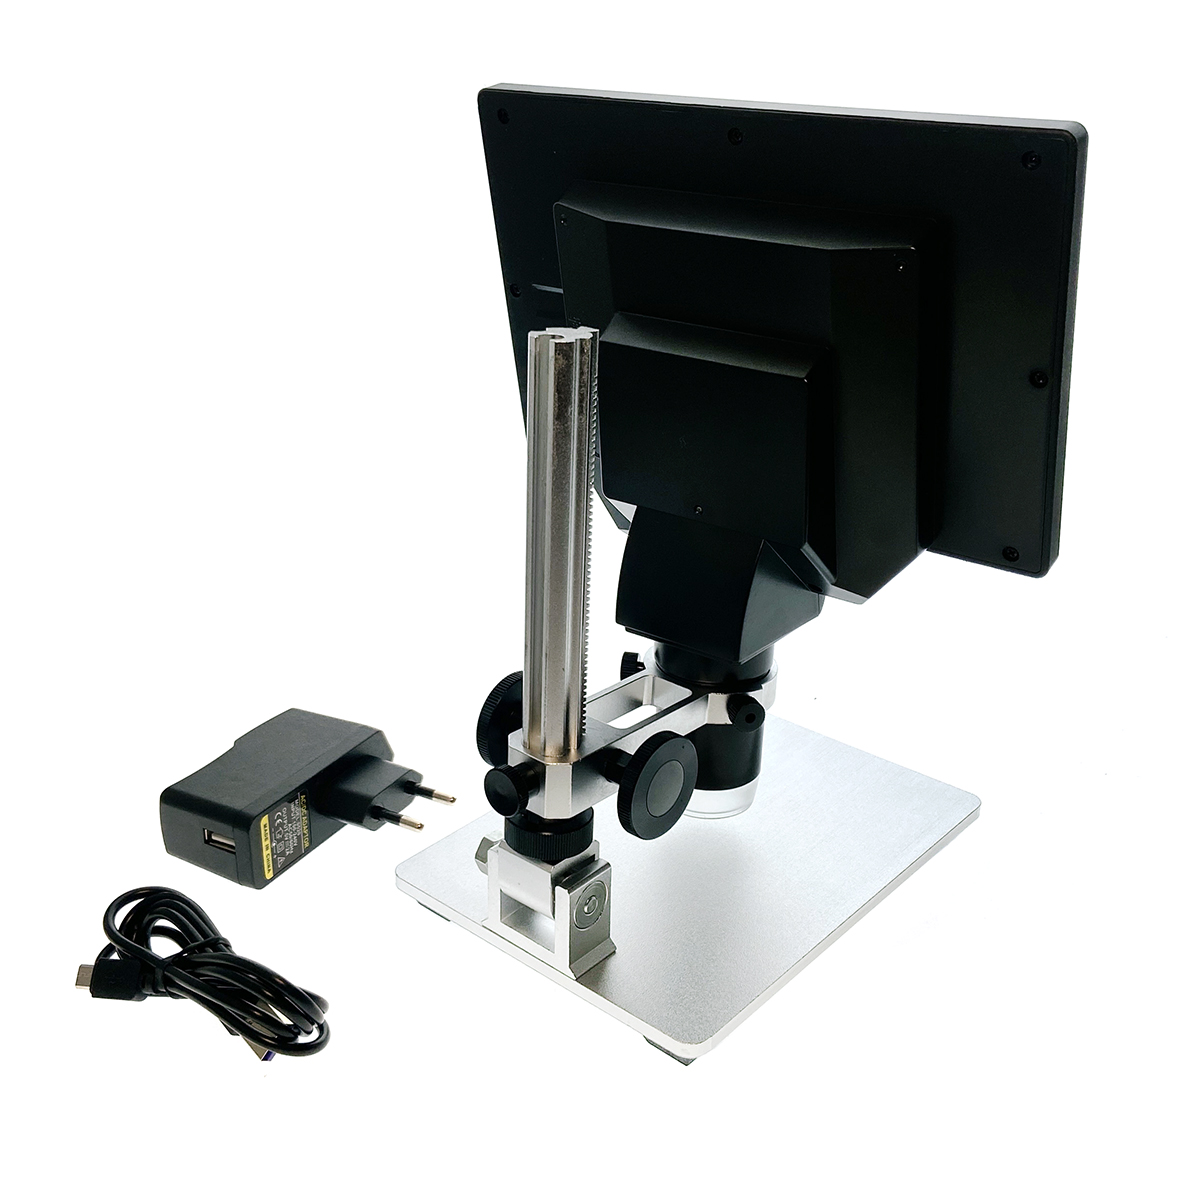 Цифровой микроскоп E-G1200A USB Espada, 12 Мп с дисплеем и подставкой